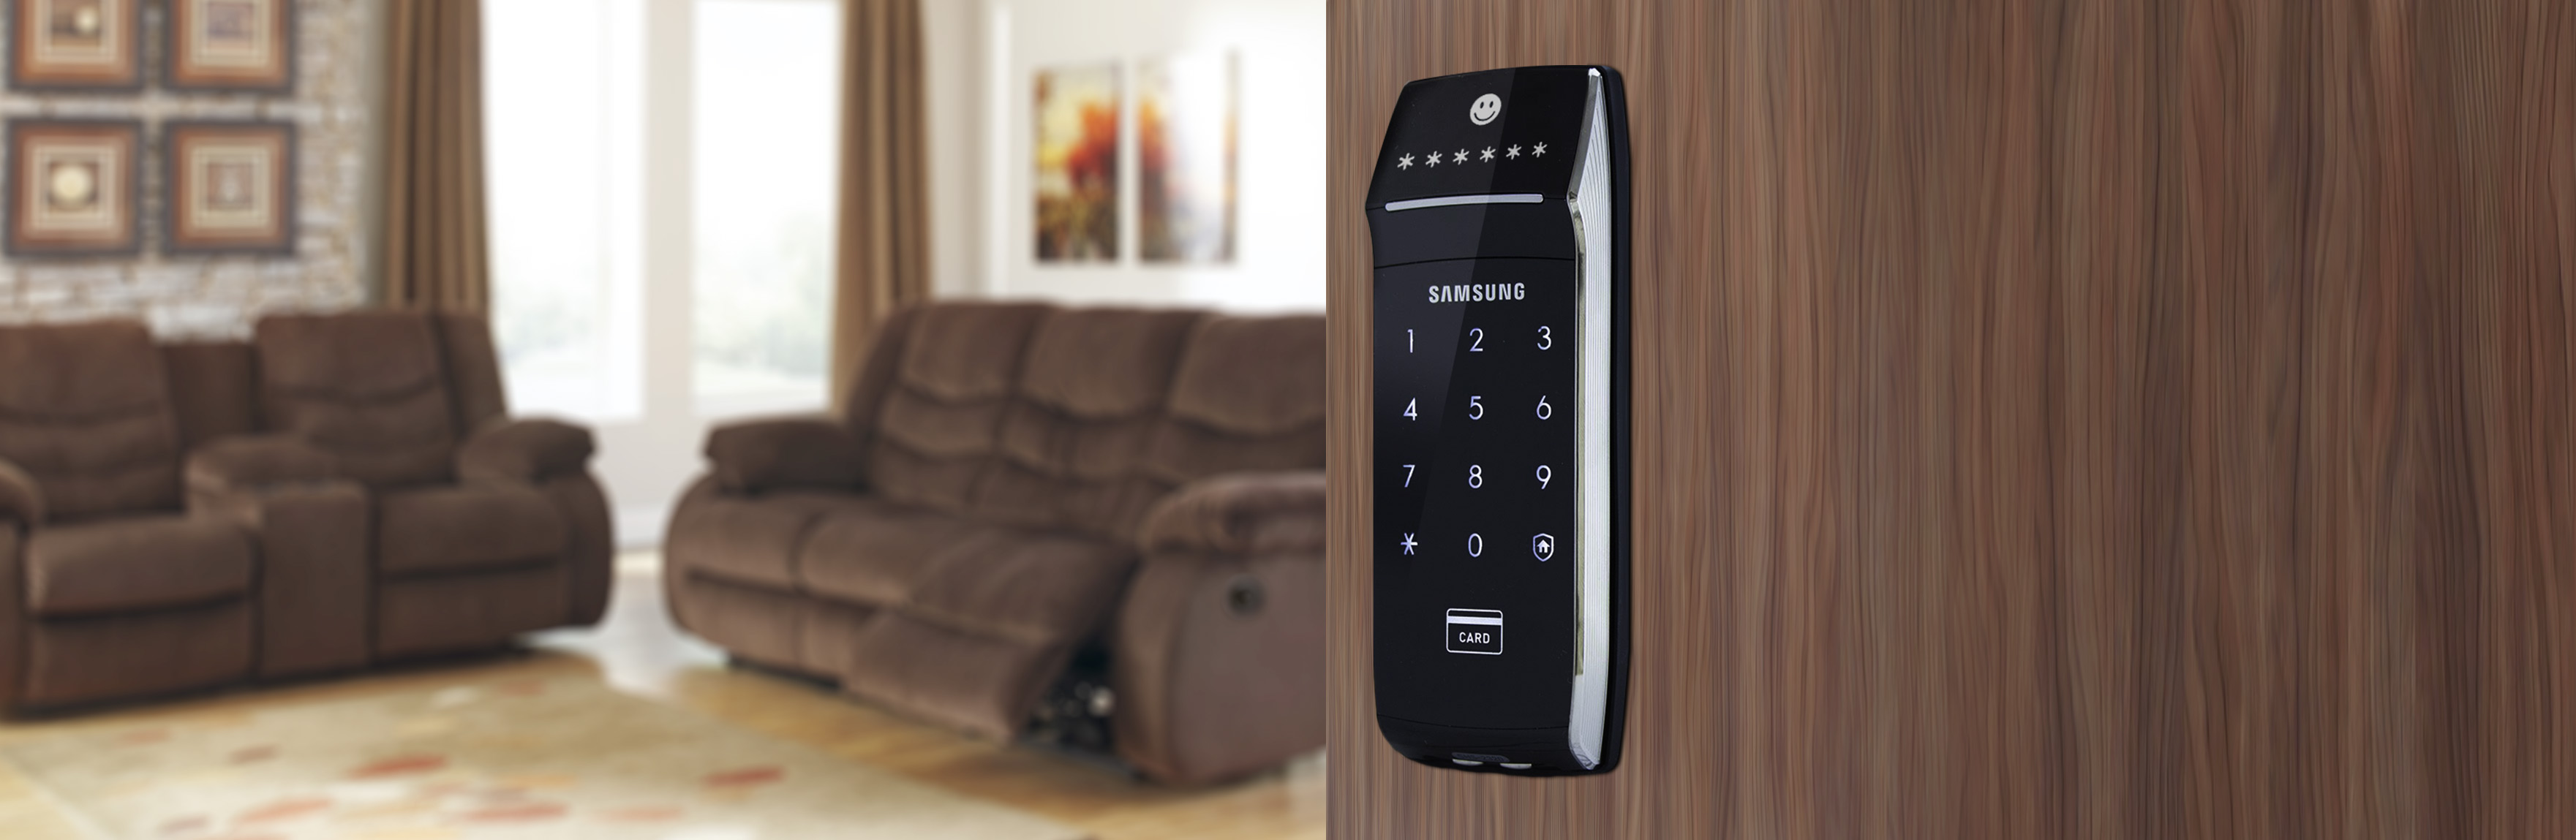 กลอนประตู ล็อคระบบดิจิตอล Samsung ซัมซุง SHS-2320 บานเลื่อน